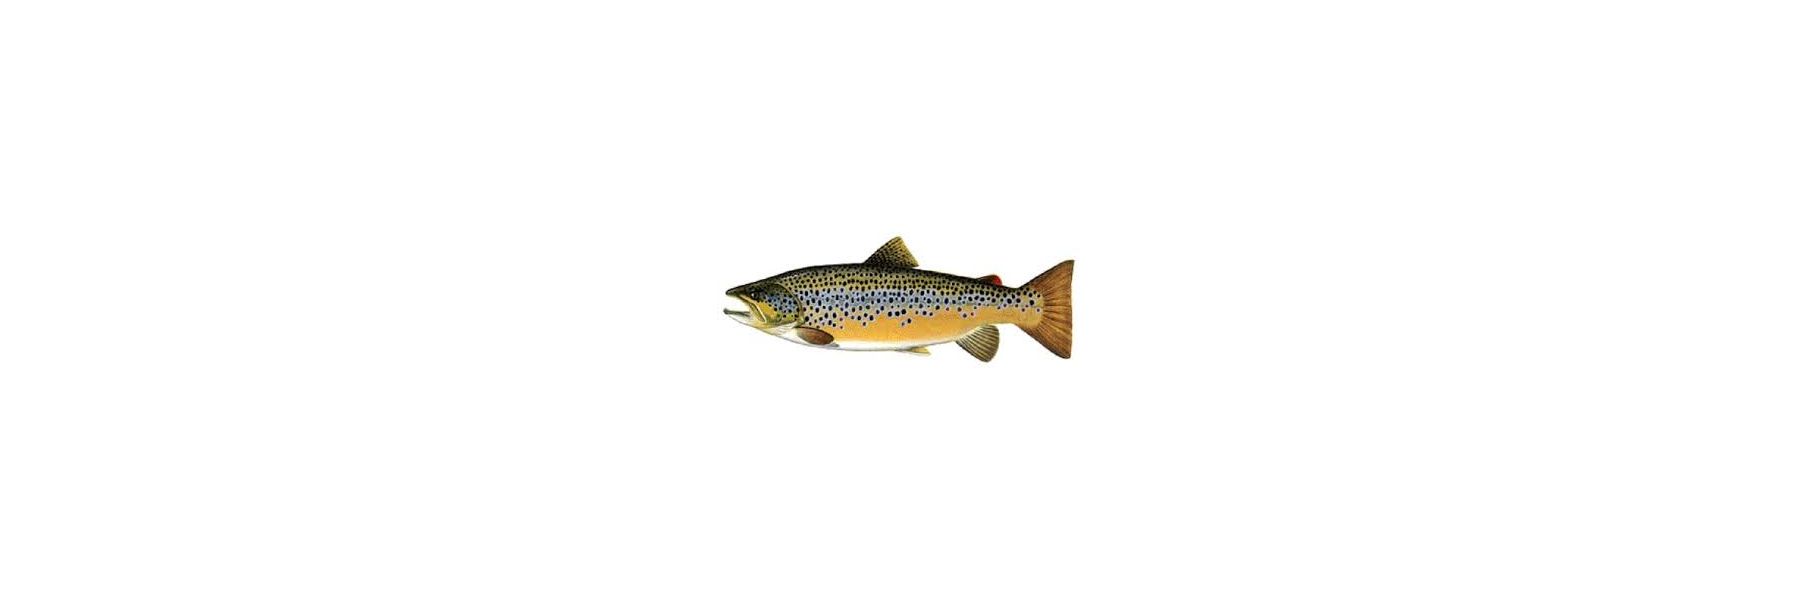  The brown trout (Salmo trutta) is a European...